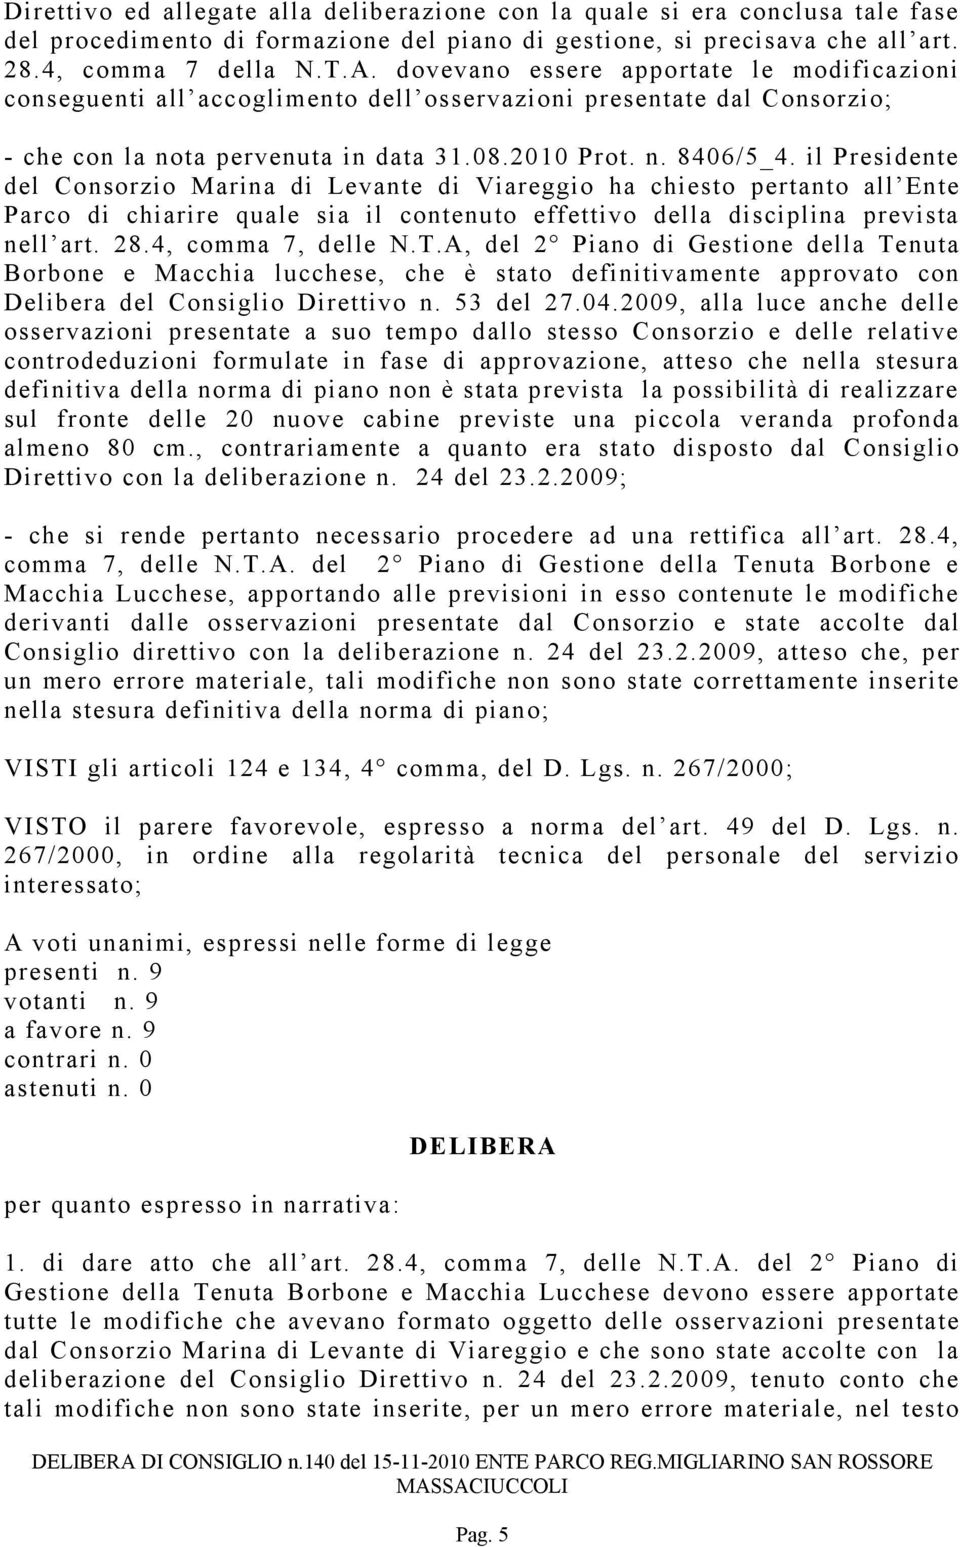 il Presidente del Consorzio Marina di Levante di Viareggio ha chiesto pertanto all Ente Parco di chiarire quale sia il contenuto effettivo della disciplina prevista nell art. 28.4, comma 7, delle N.T.